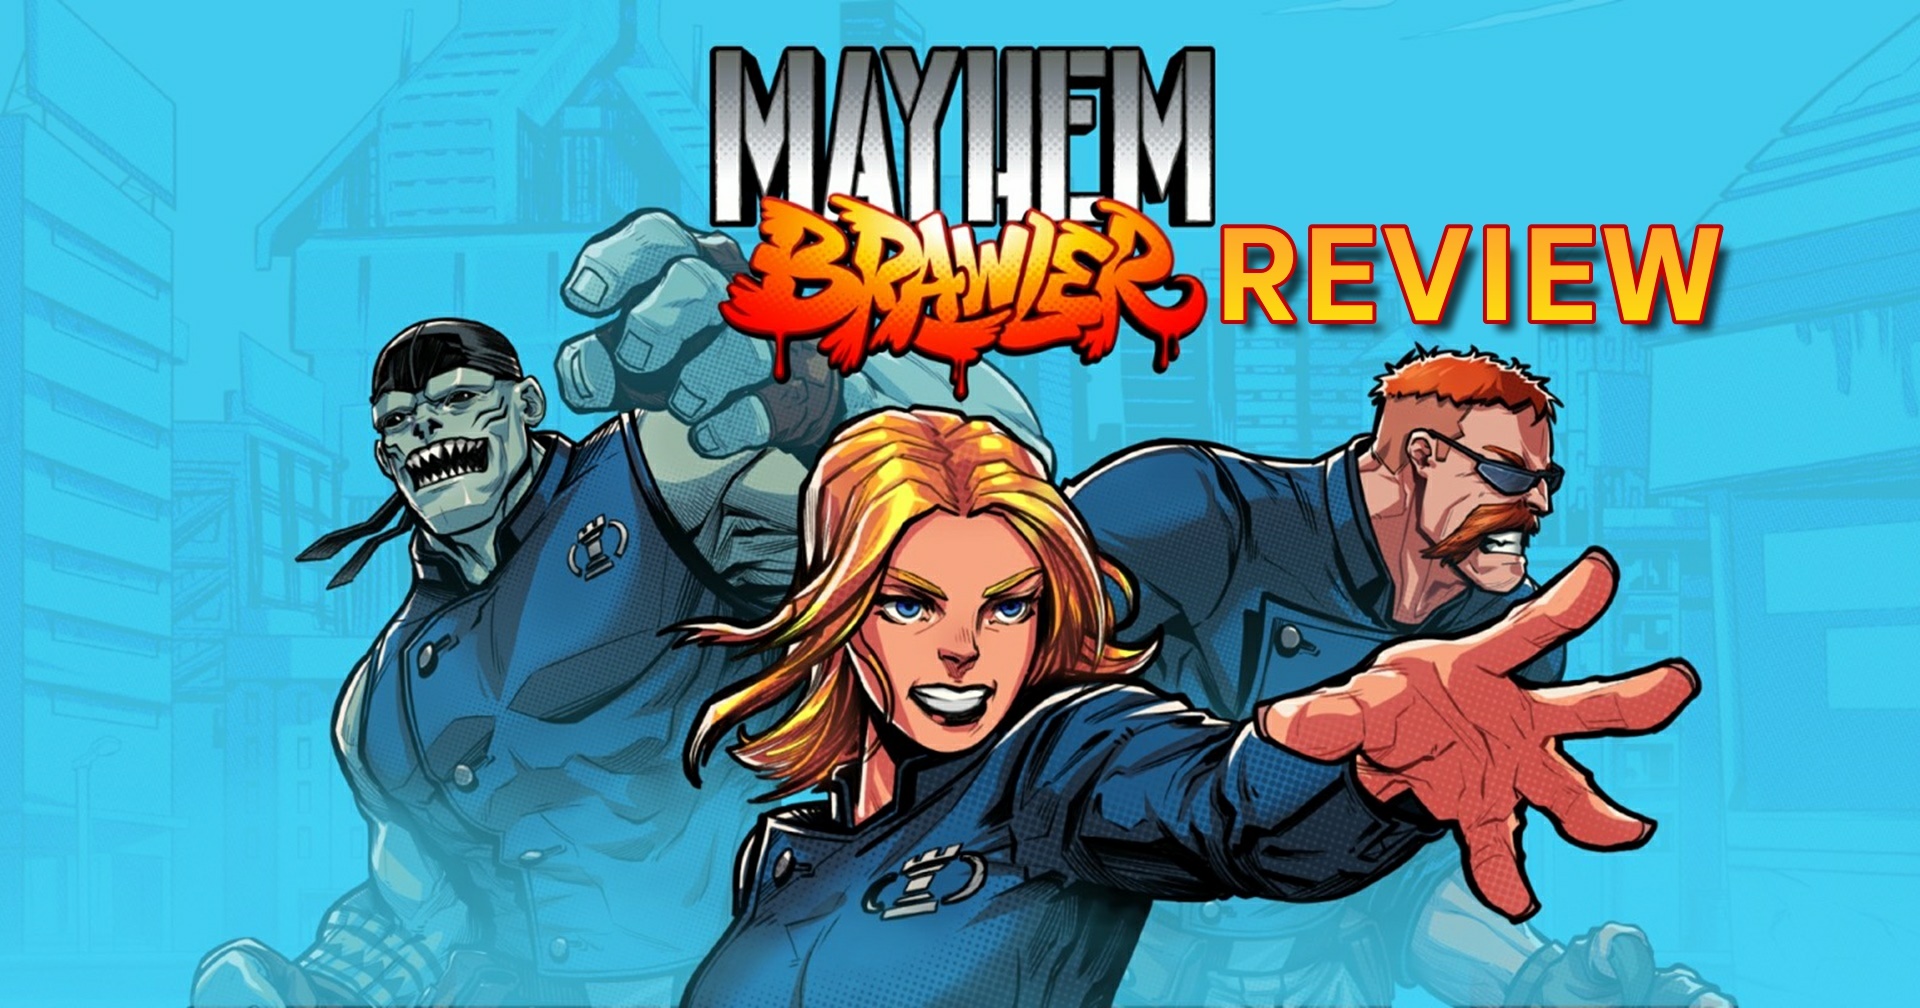 รีวิวเกม Mayhem Brawler เกมแอ็กชันจากค่ายเล็กที่ทำออกมาดีเท่าค่ายใหญ่